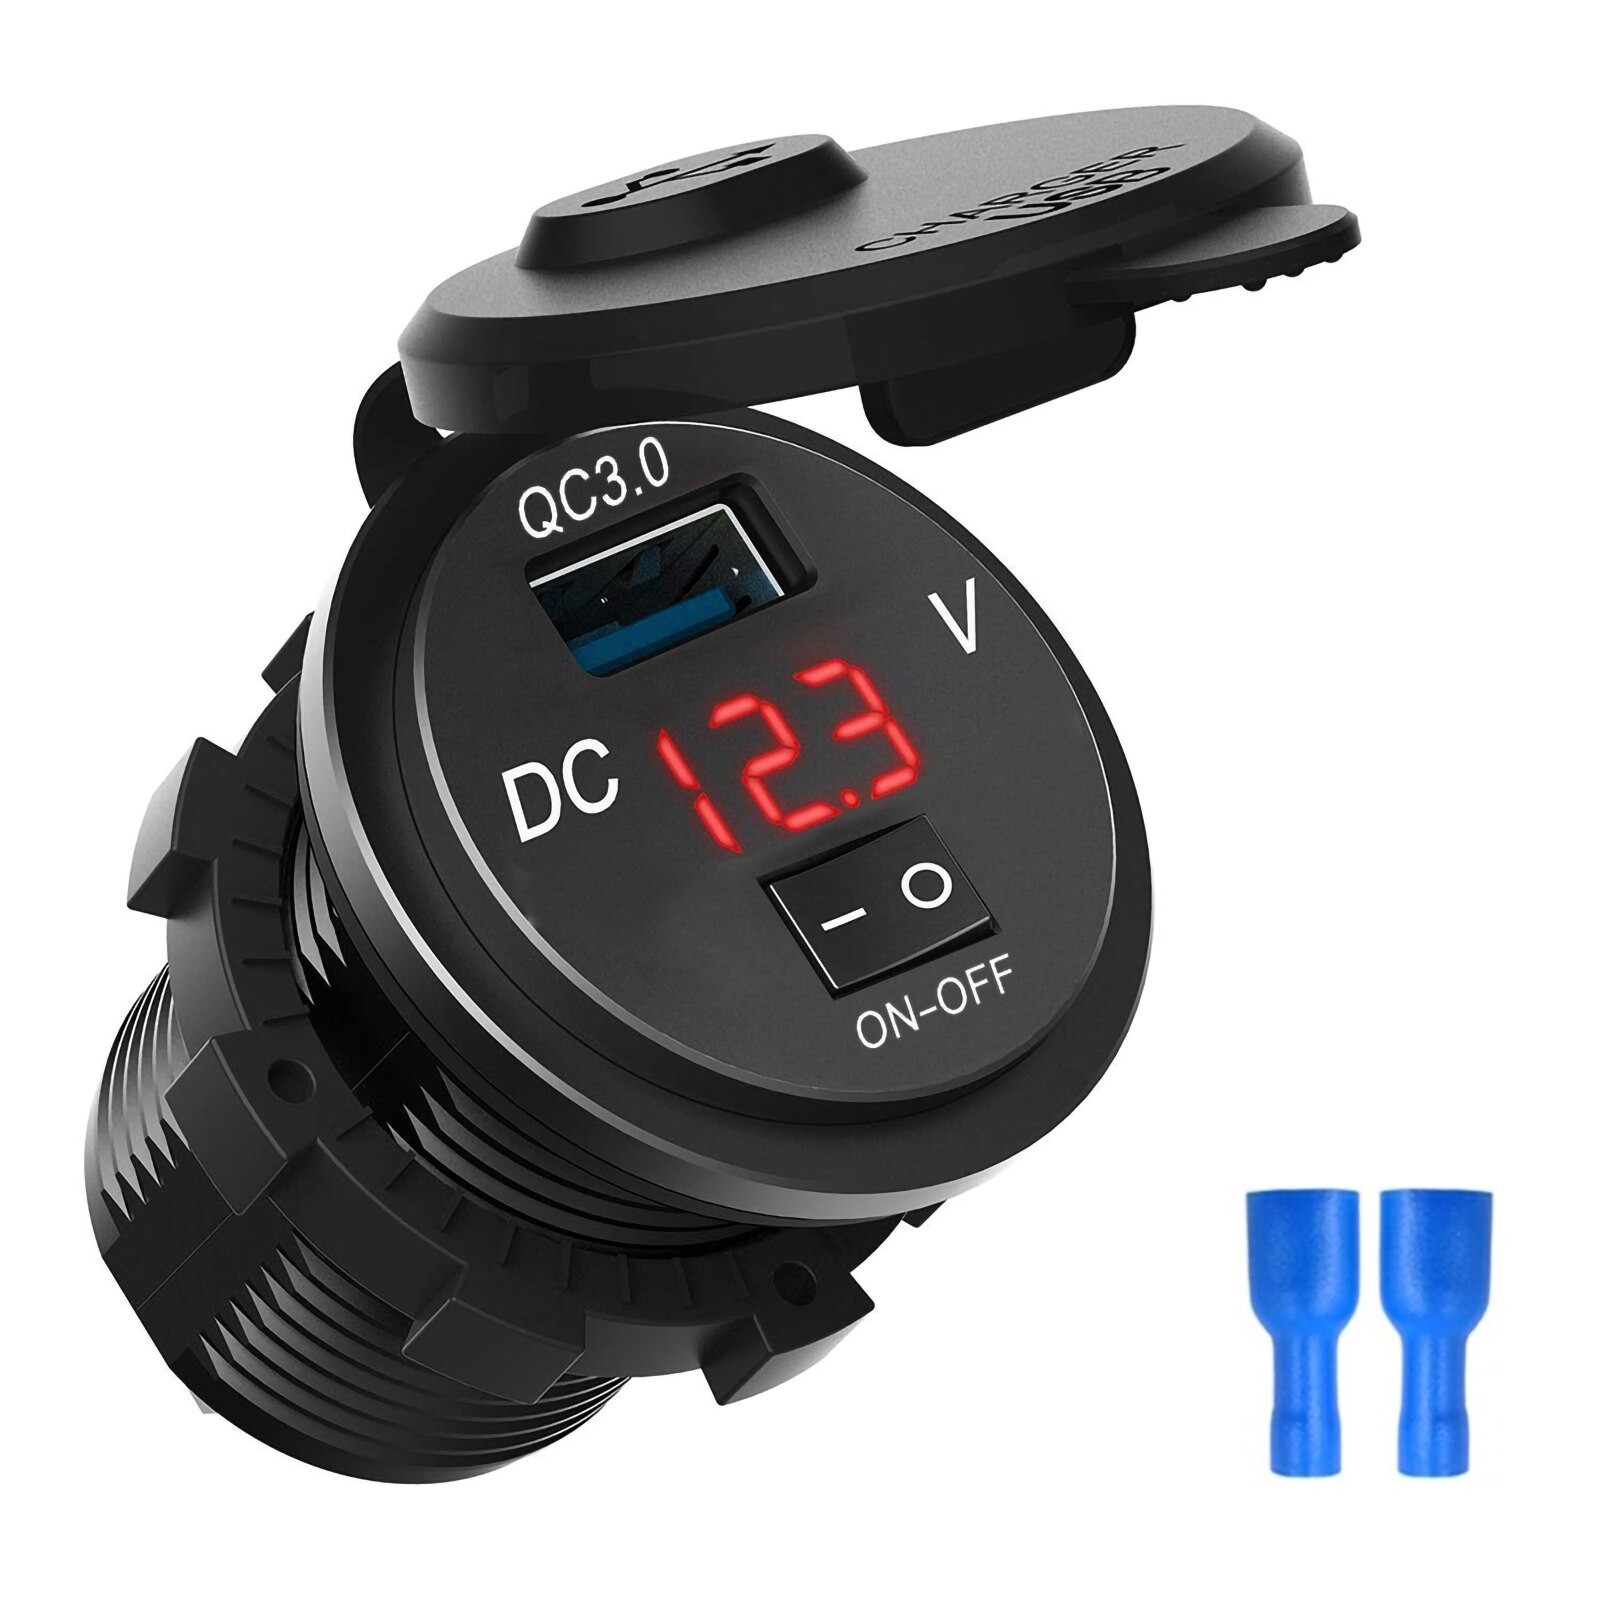 schnell aufladen 3,0 USB Auto Ladegerät Steckdose Digital Anzeige Voltmeter AUF-aus Schalter für Auto Marine ATV Motorrad: rot